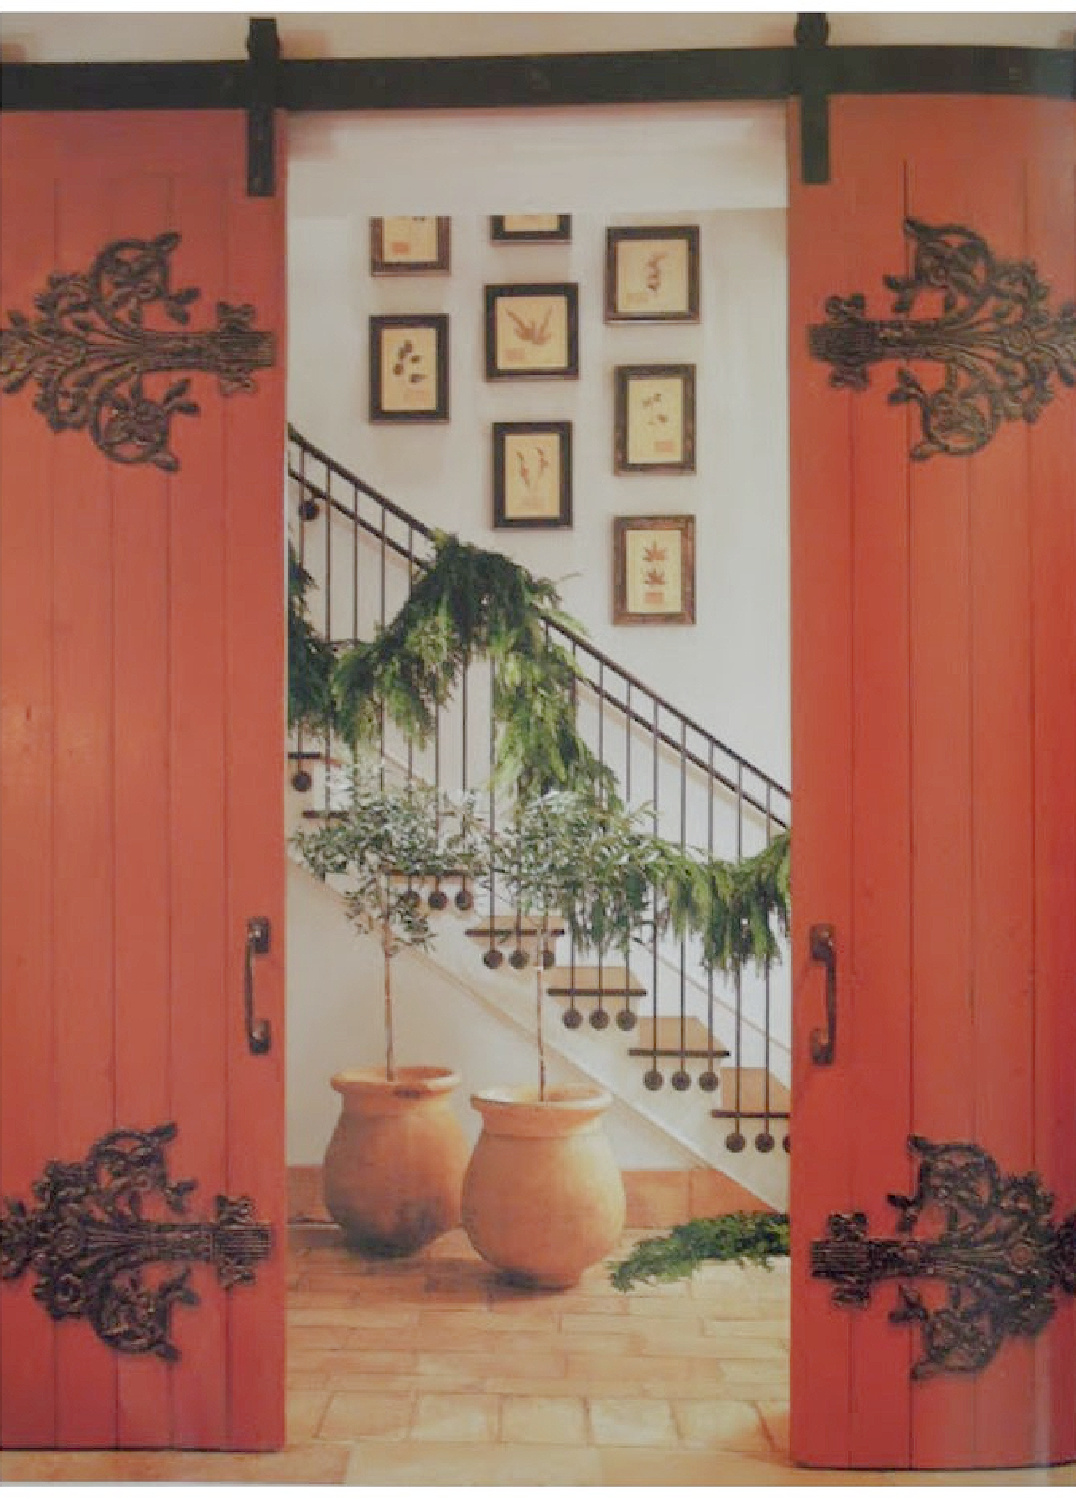 Pamela Pierce Christmas decor in her own home - Veranda. #pamelapierce #modernfrench #frenchcountrychristmas